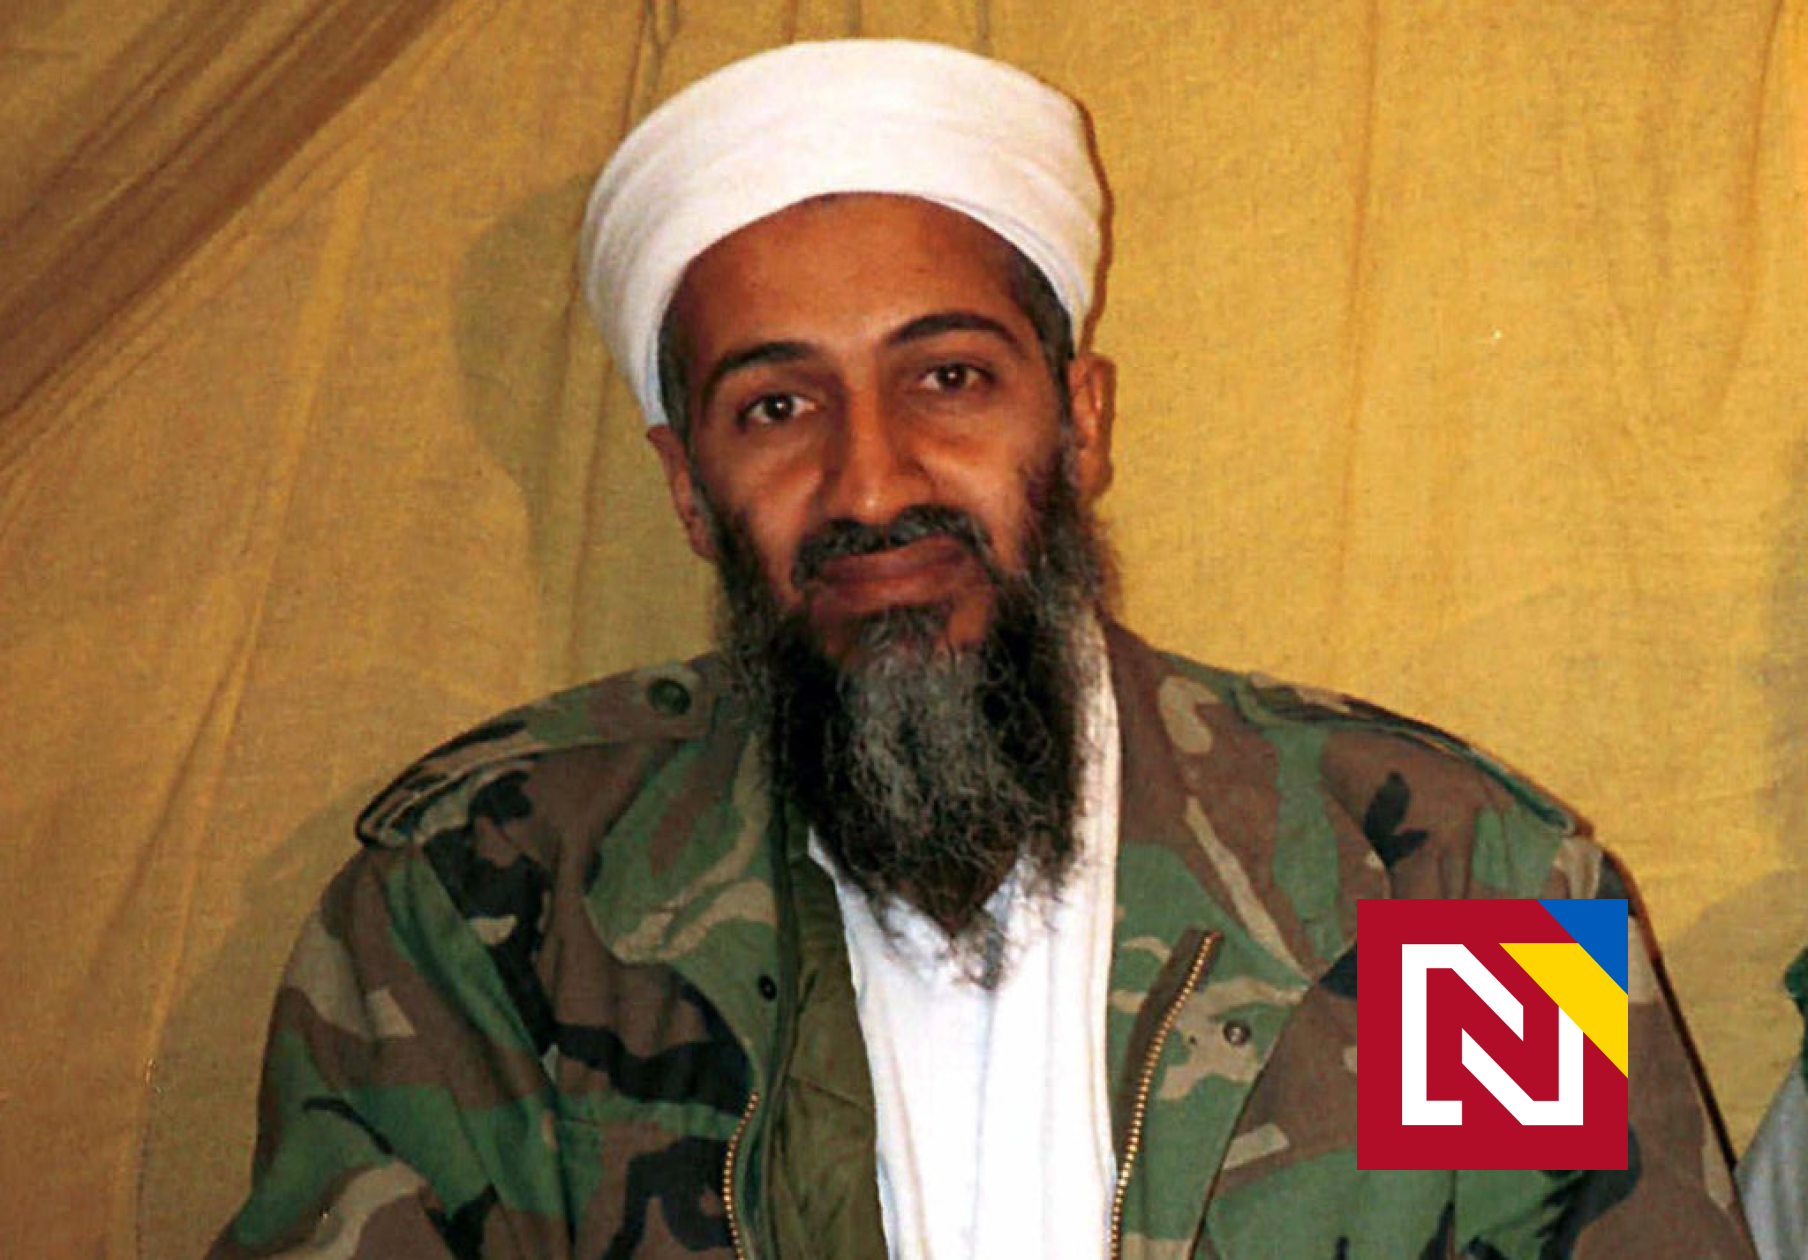 De jeunes Américains ont découvert et partagé la lettre de Ben Laden sur TikTok.  C’est devenu un scandale politique